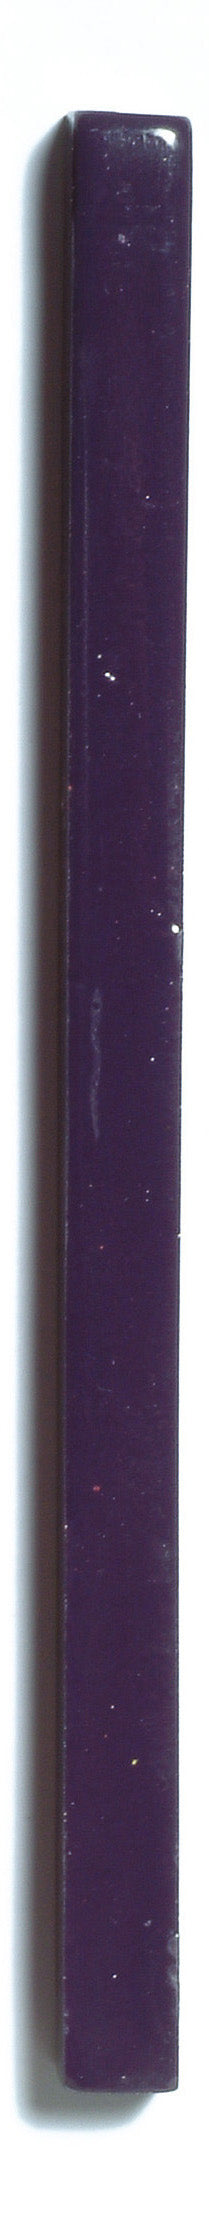 Large Standard Sealing Wax